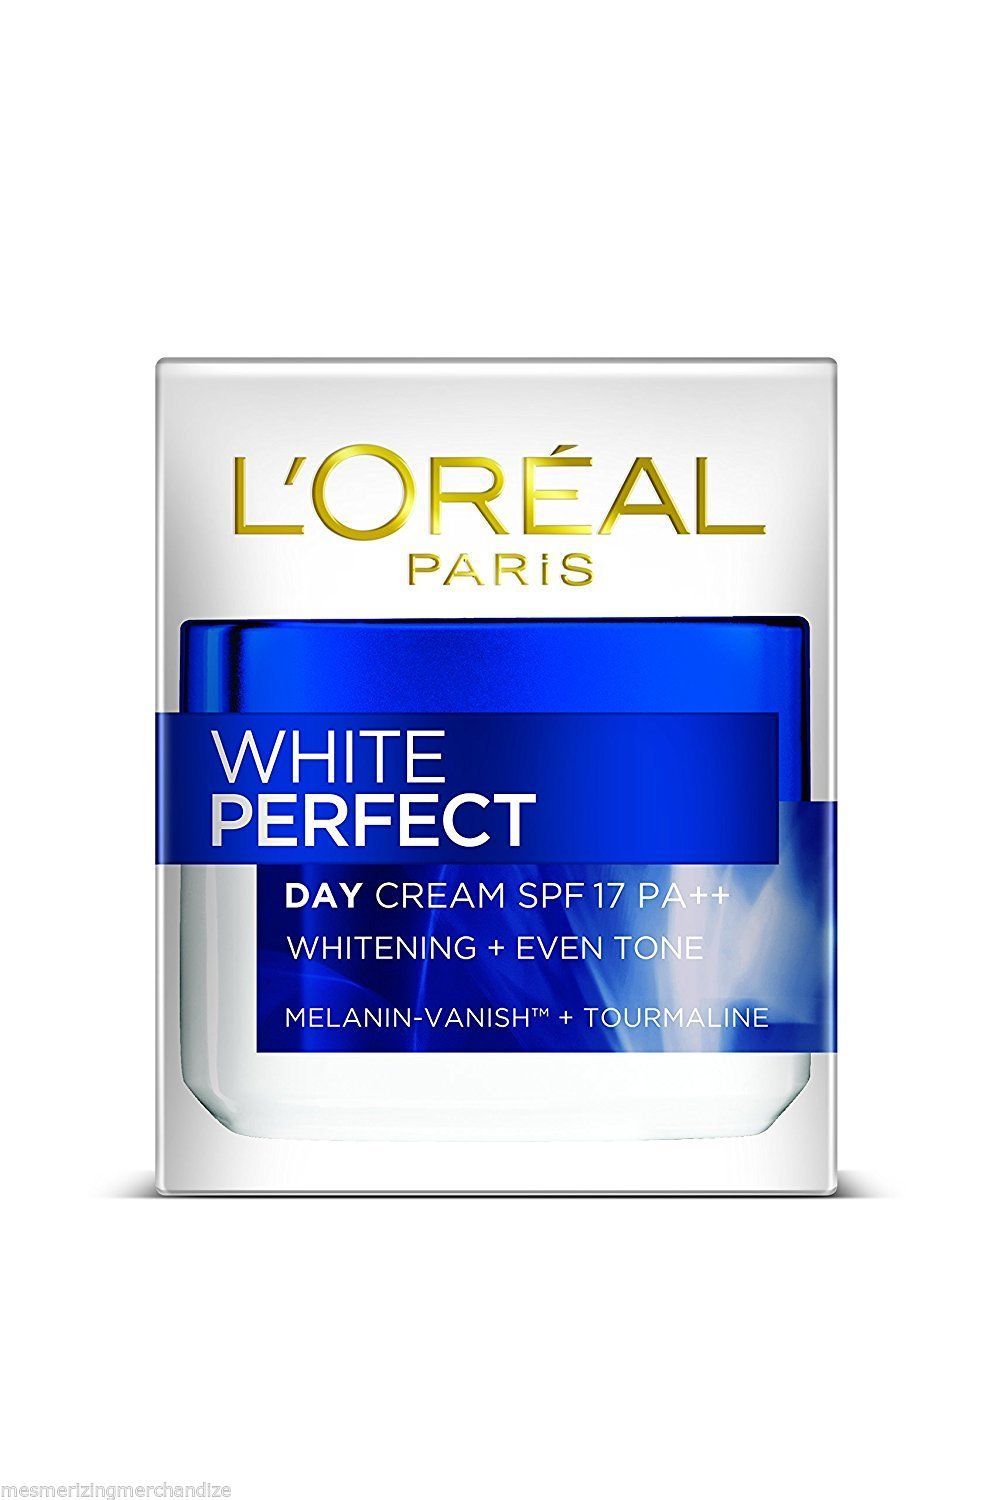 L'Oreal Paris White Perfect Day Cream SPF 17 Even Tone - 50ml - $29.99